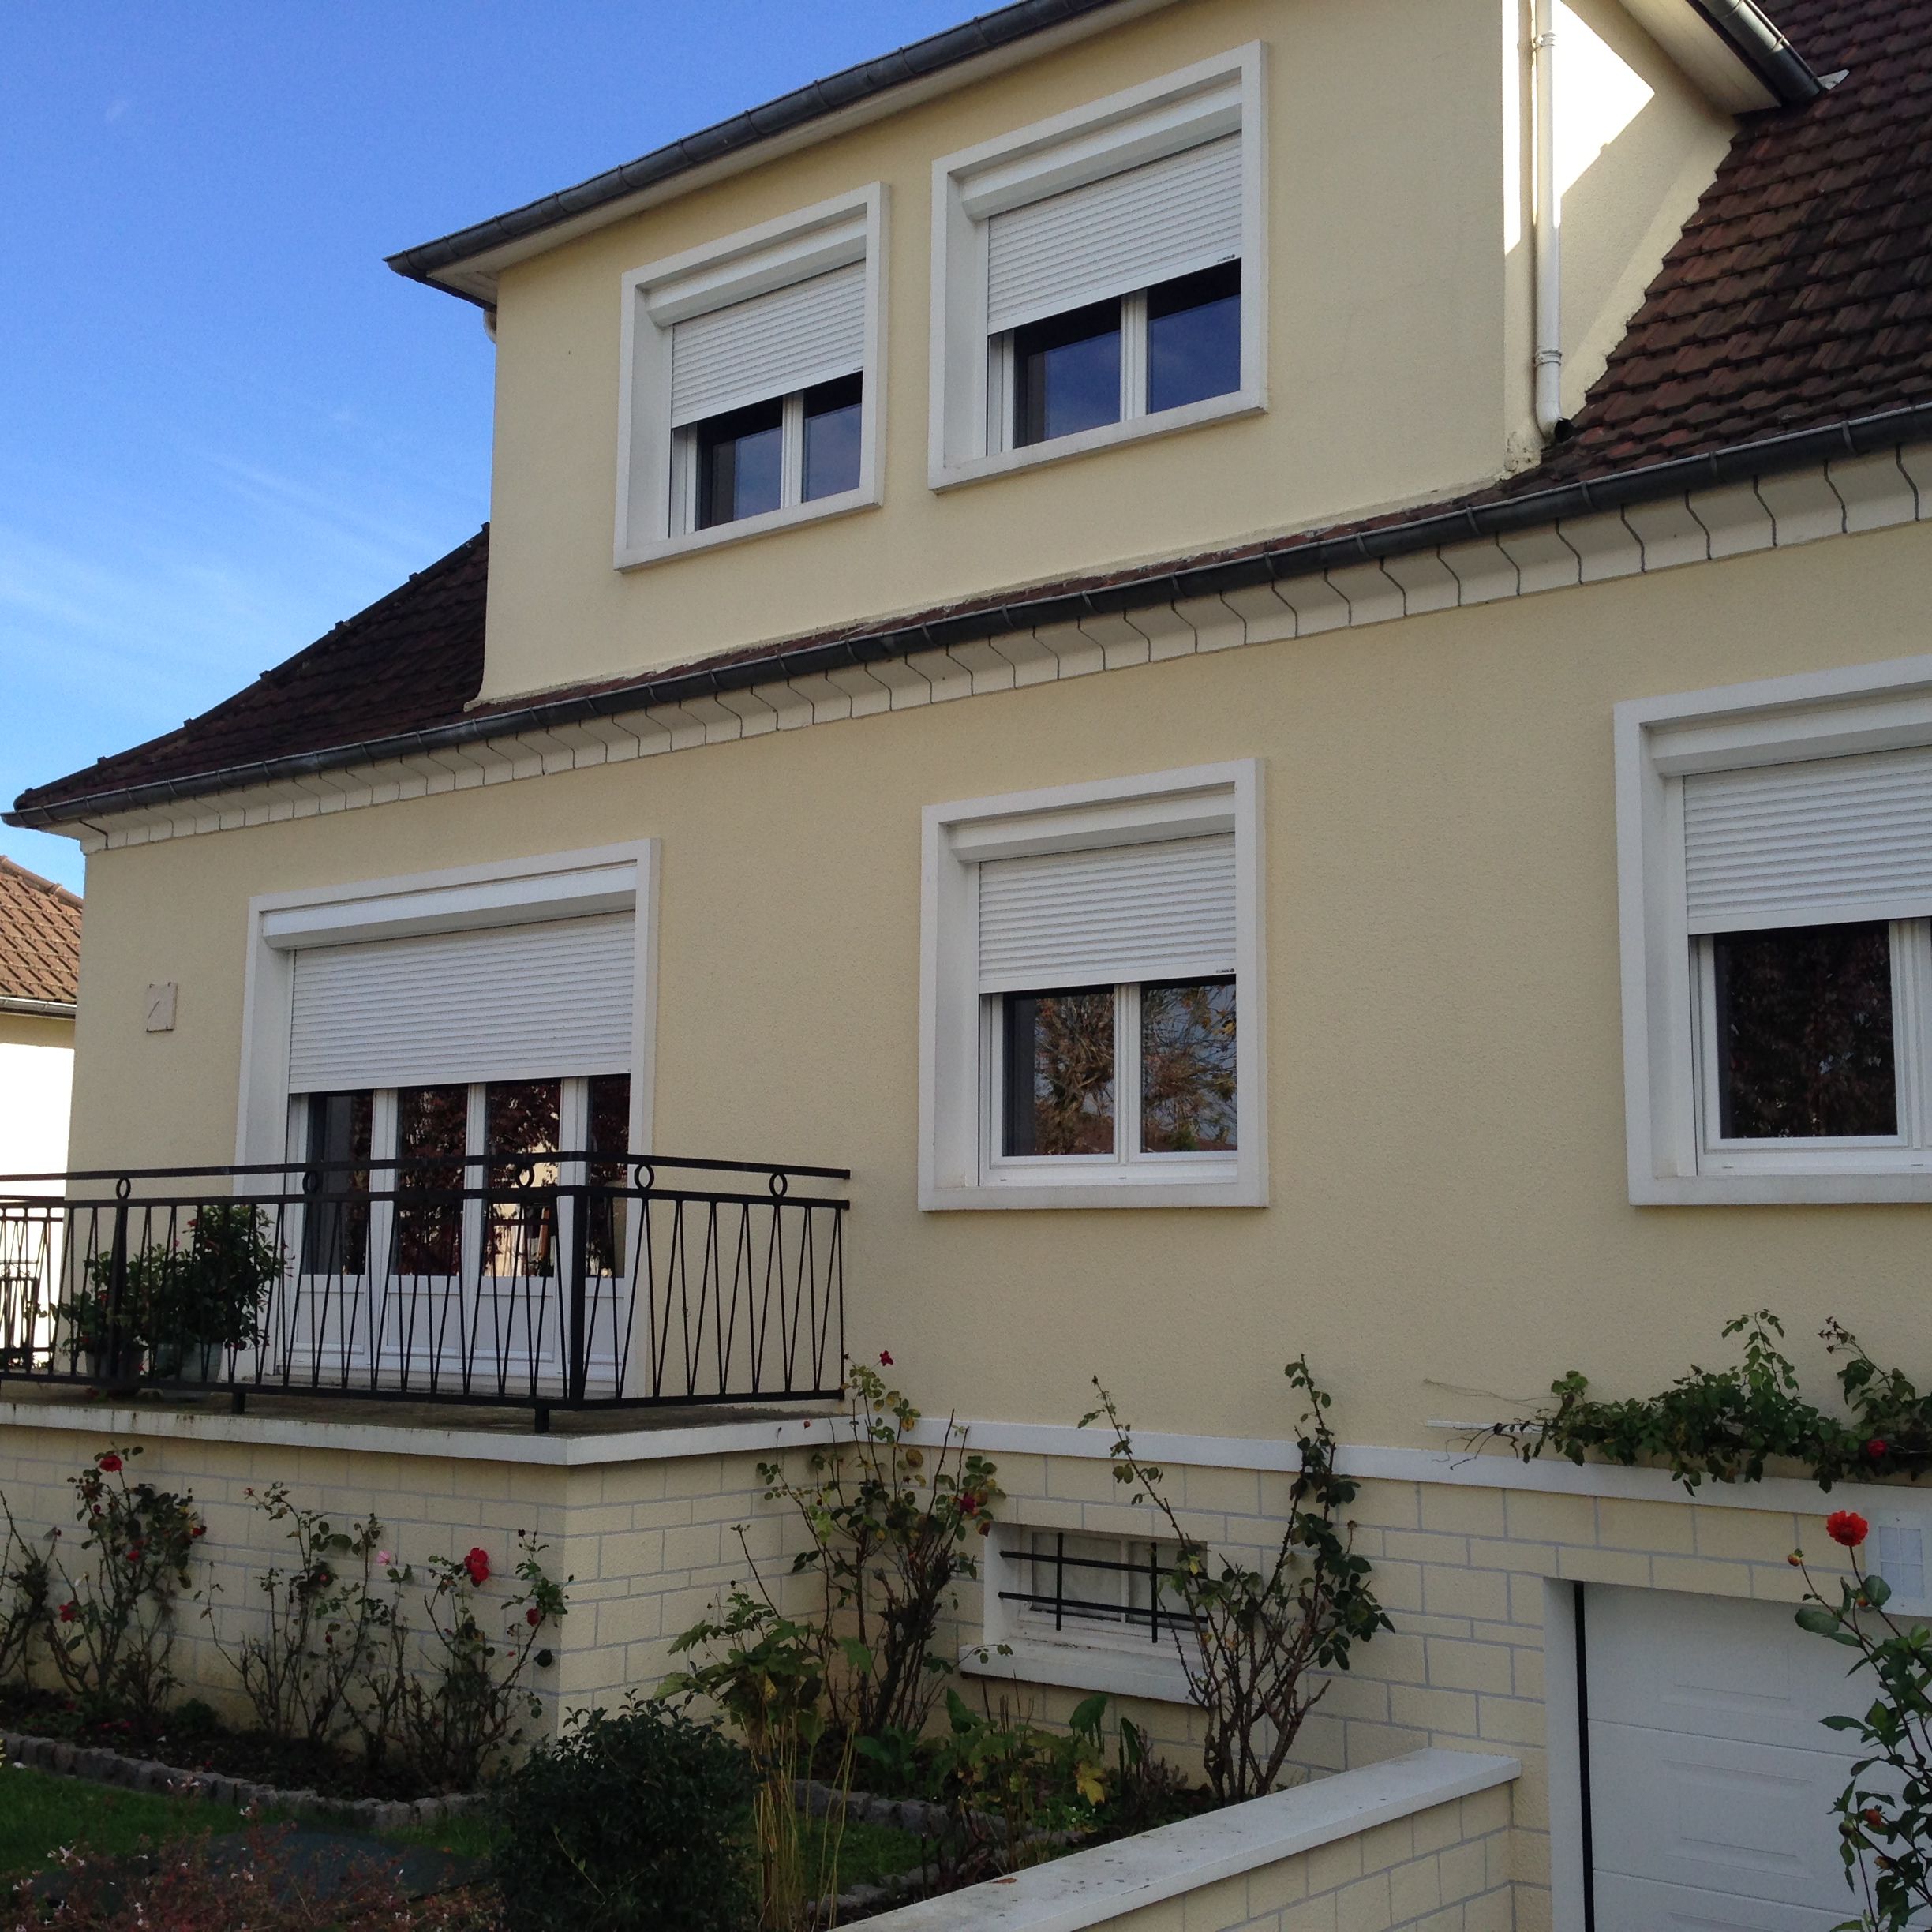 fenêtre volets roulant façade vue extérieure maison beige